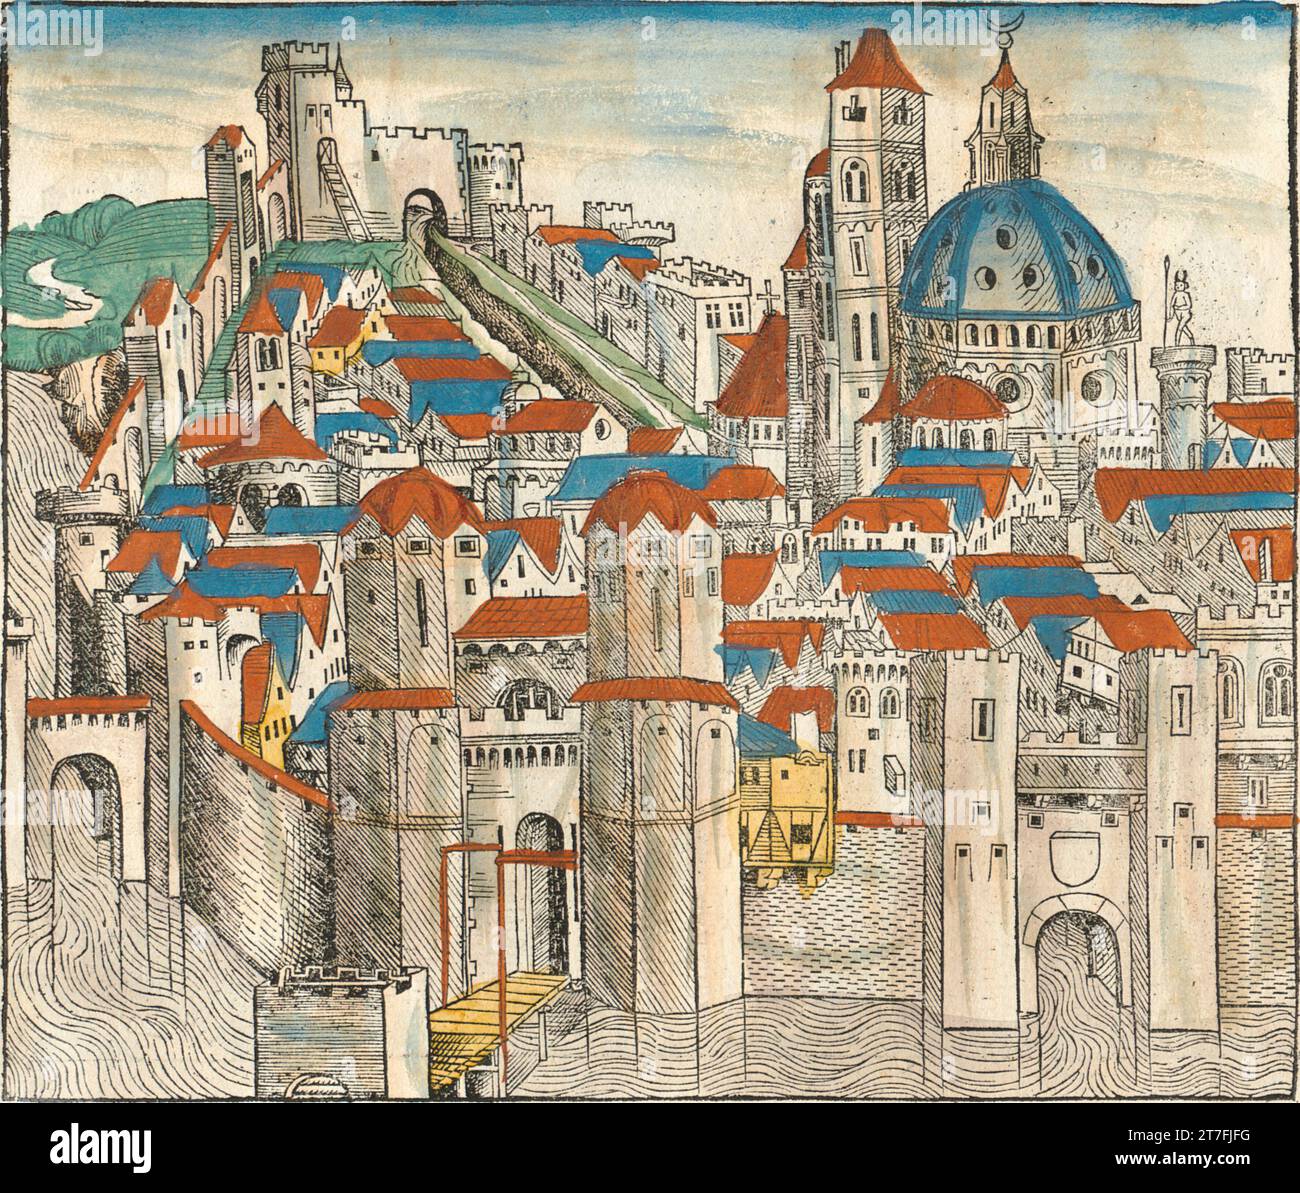 Représentation de Nicée, Empire byzantin - Illustration de la chronique de Nuremberg, 1493. Illustré par Wilhelm Pleydenwurff et Michael Wolgemut Banque D'Images